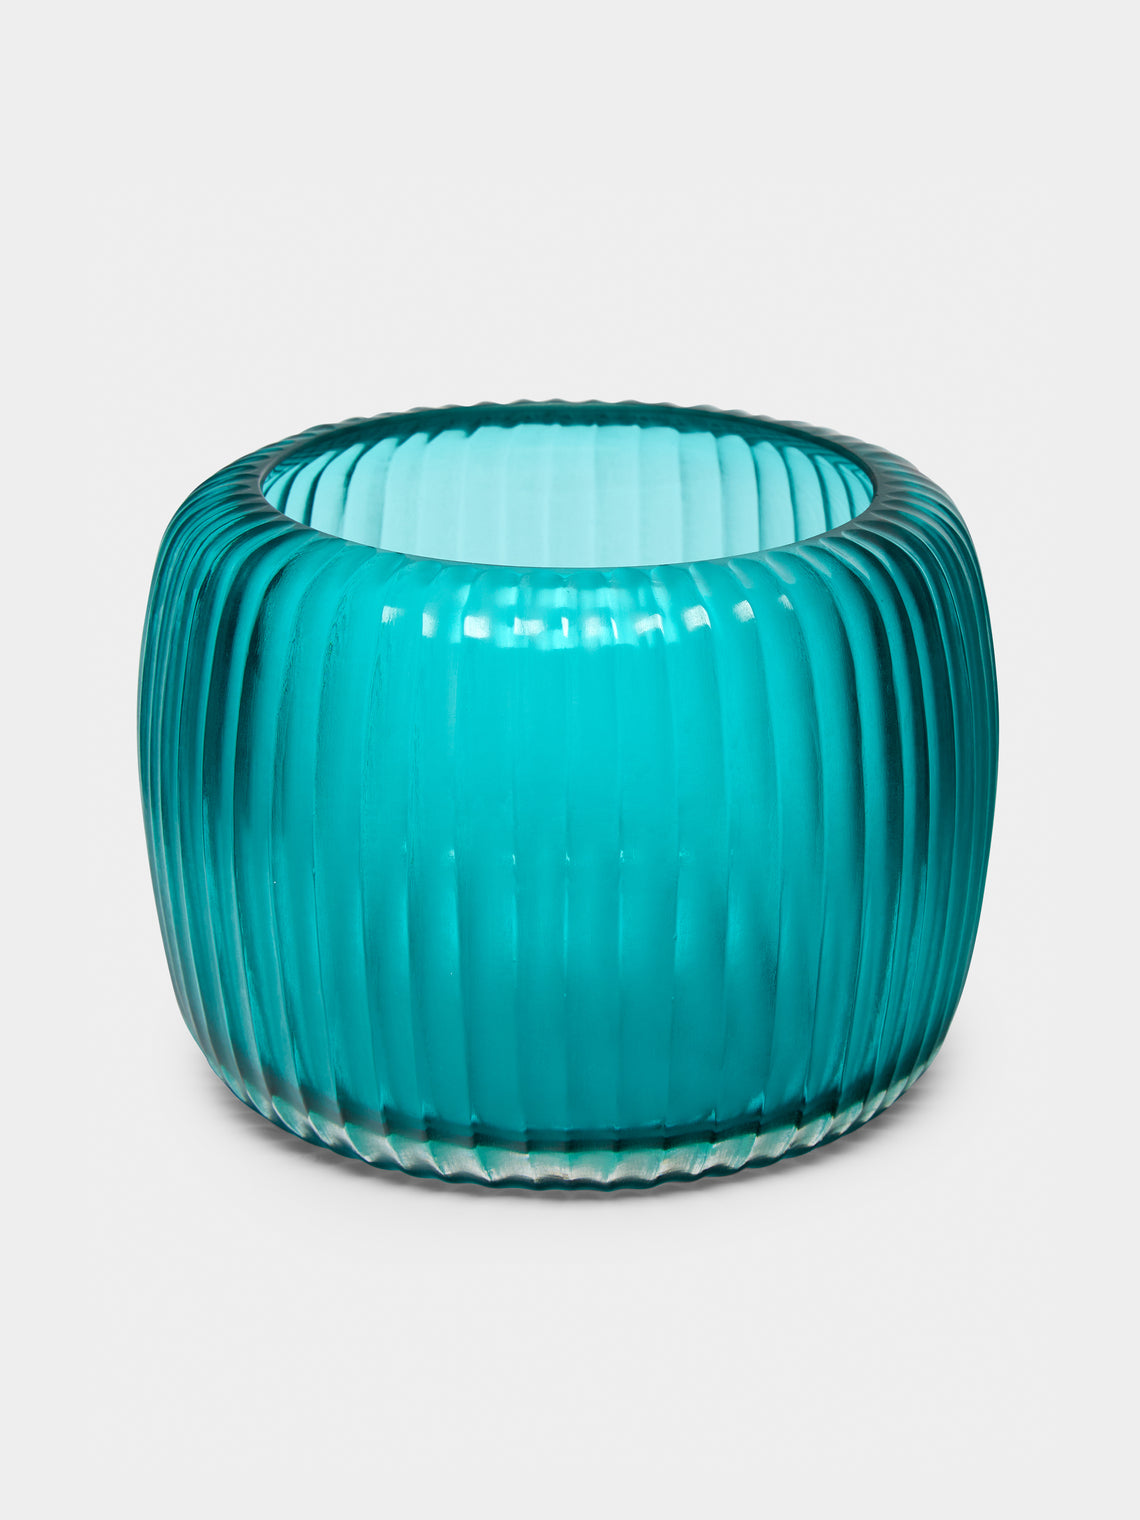 Micheluzzi Glass - Pozzo Acqua Hand-Blown Murano Glass Vase - Teal - ABASK - 